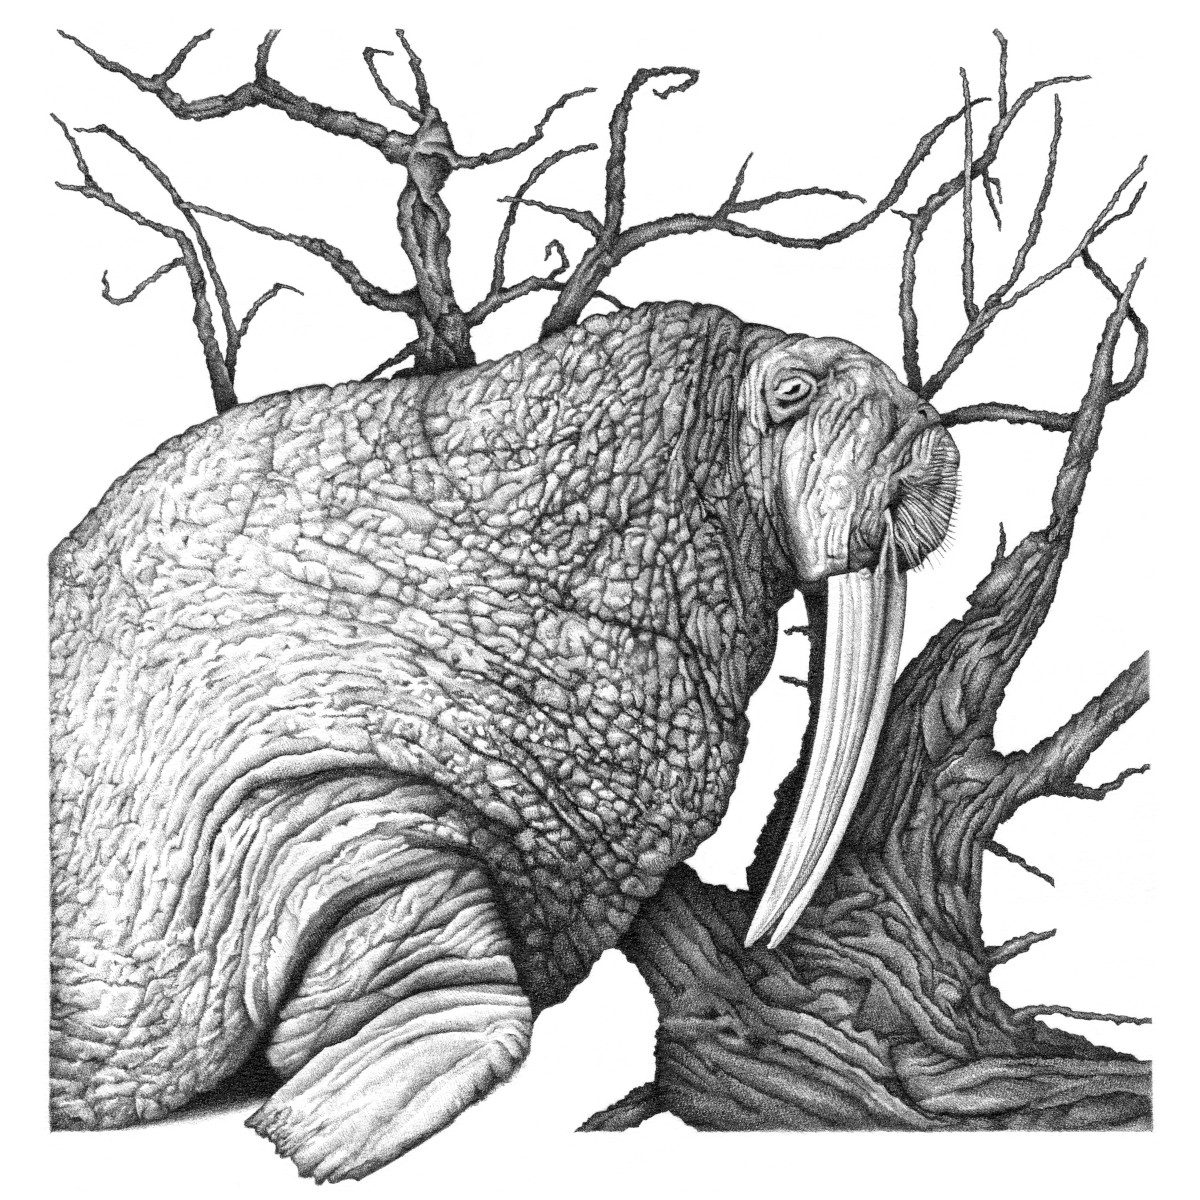 Walrus Tree (2020)